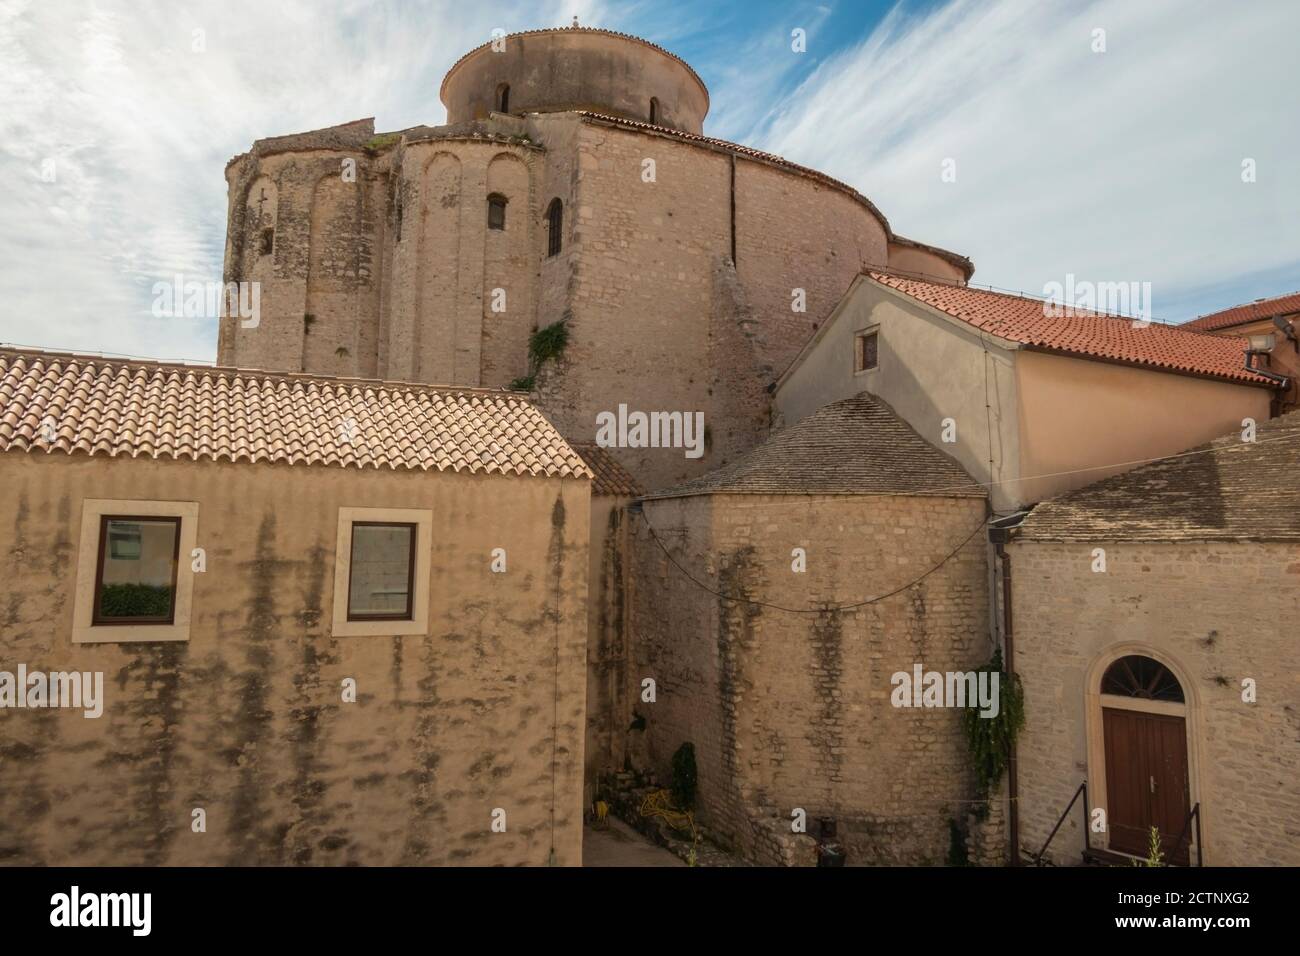 St. Donatus Kirche und der Glockenturm der Kathedrale von Zadar, berühmtes Wahrzeichen von Kroatien, adria-Region von Dalmatien. Überreste des römischen Forums. Stockfoto